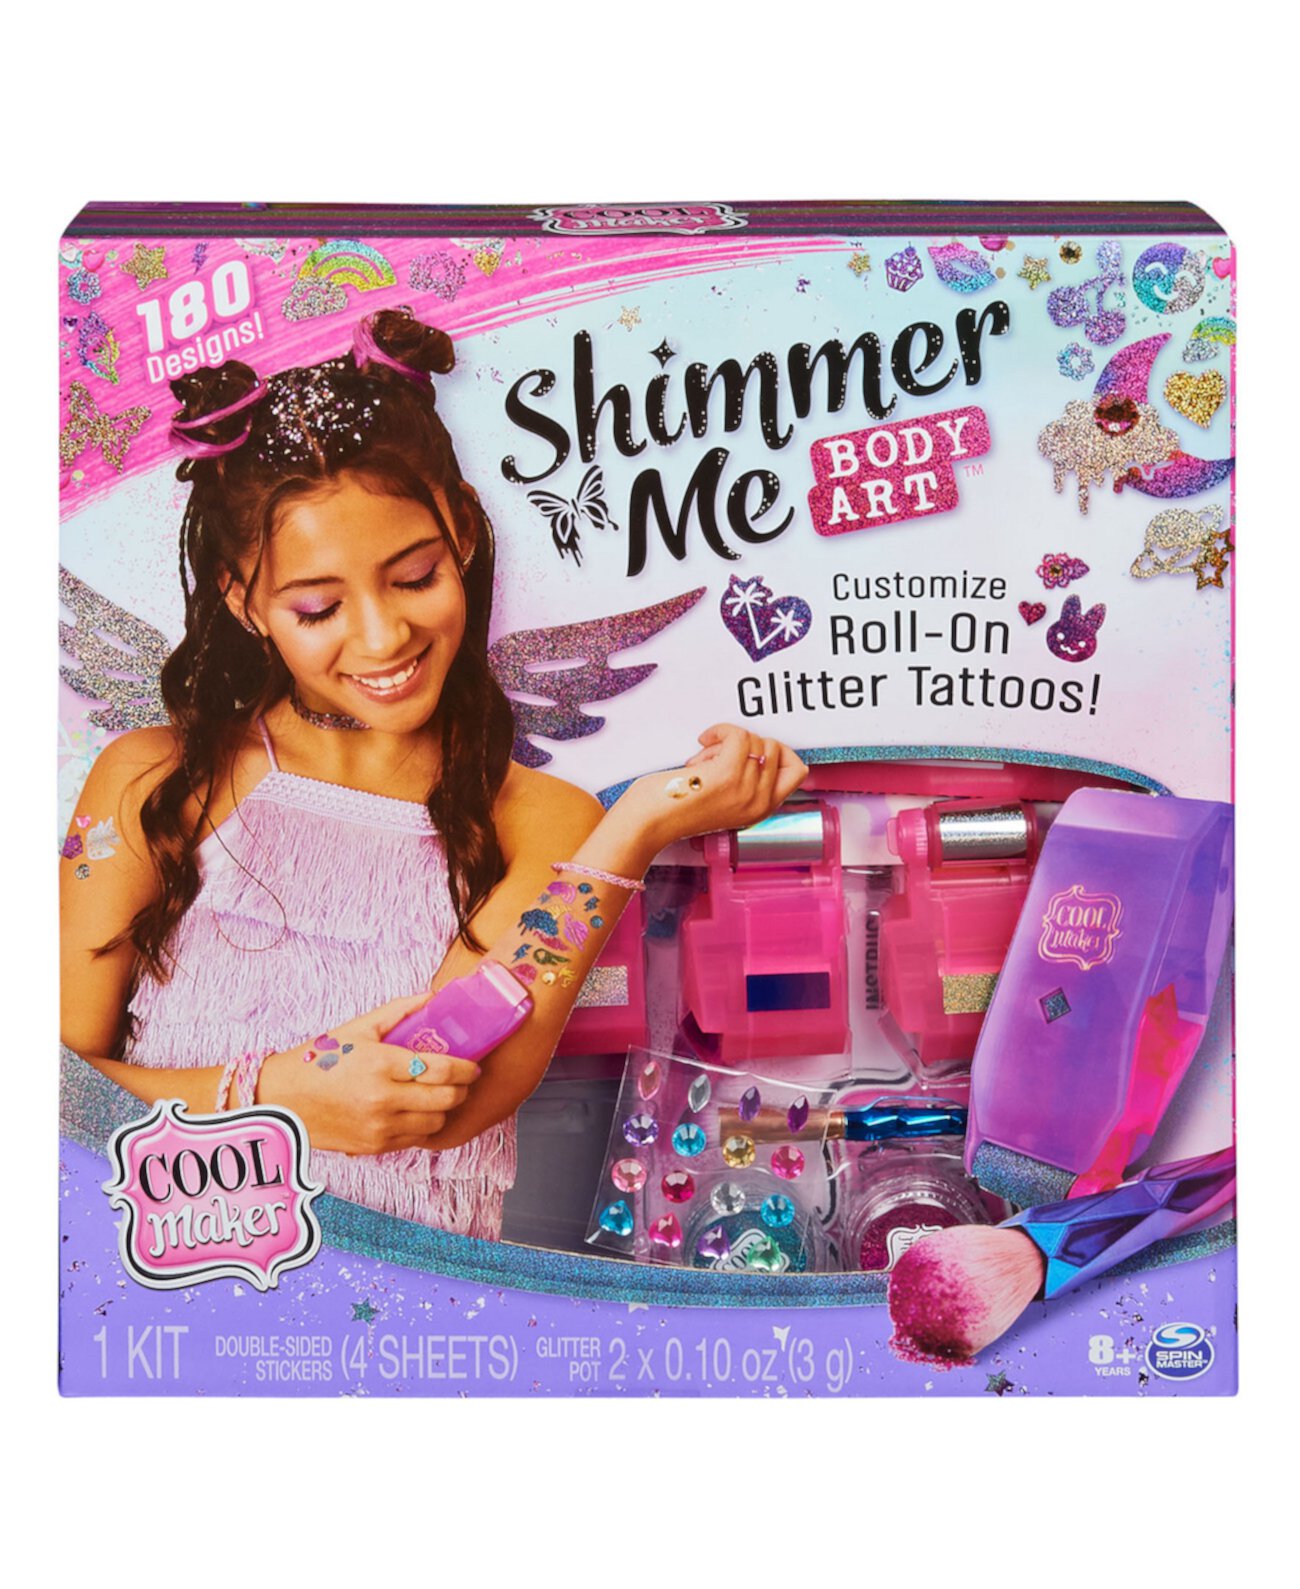 Shimmer Me Body Art with Roller, 4 металлические фольги и 180 рисунков, набор временных татуировок, 14 предметов, детские игрушки для детей от 8 лет и старше Cool Maker